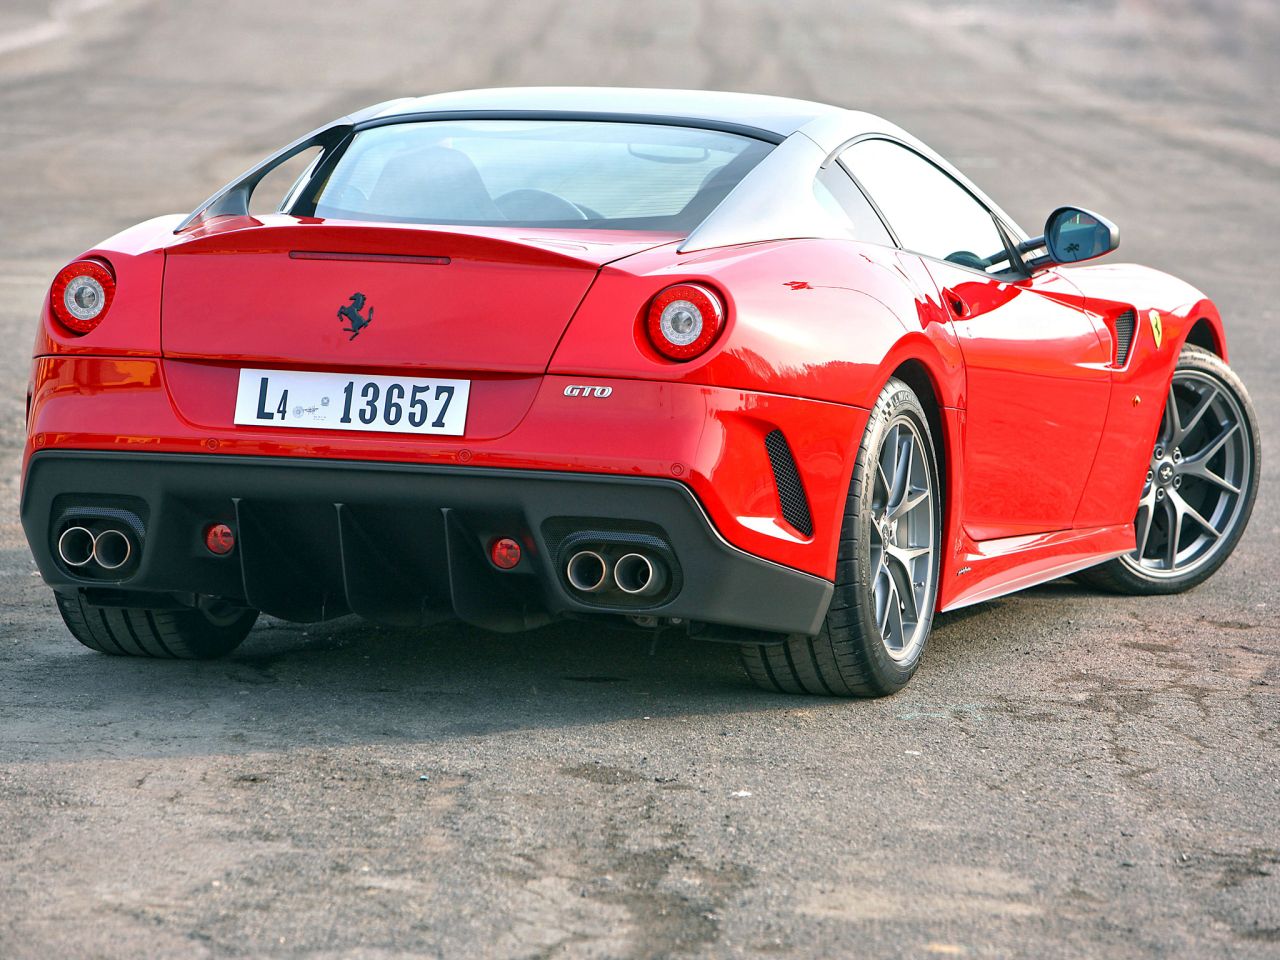 Engine Sound - Ferrari 599 GTO - Un bon coup d'douze 18